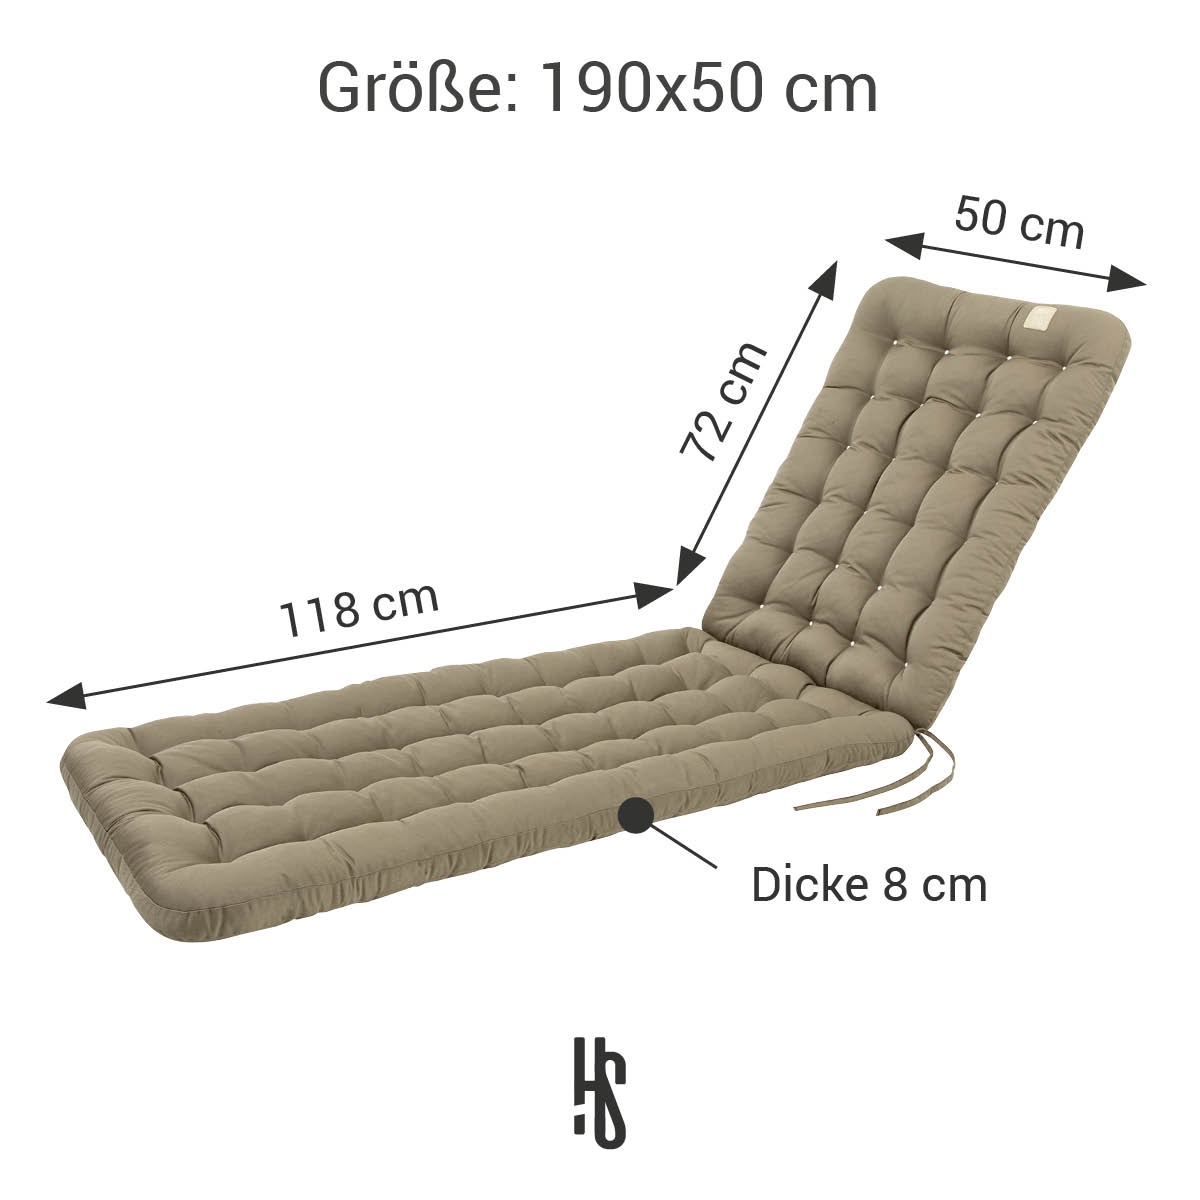 Deckchair Auflage 190x50 cm / 8 cm dick | Goldbraun|  bequem & orthopädisch | Indoor / Outdoor | wetterfest | waschbar bis 95°C | HAVE A SEAT Living